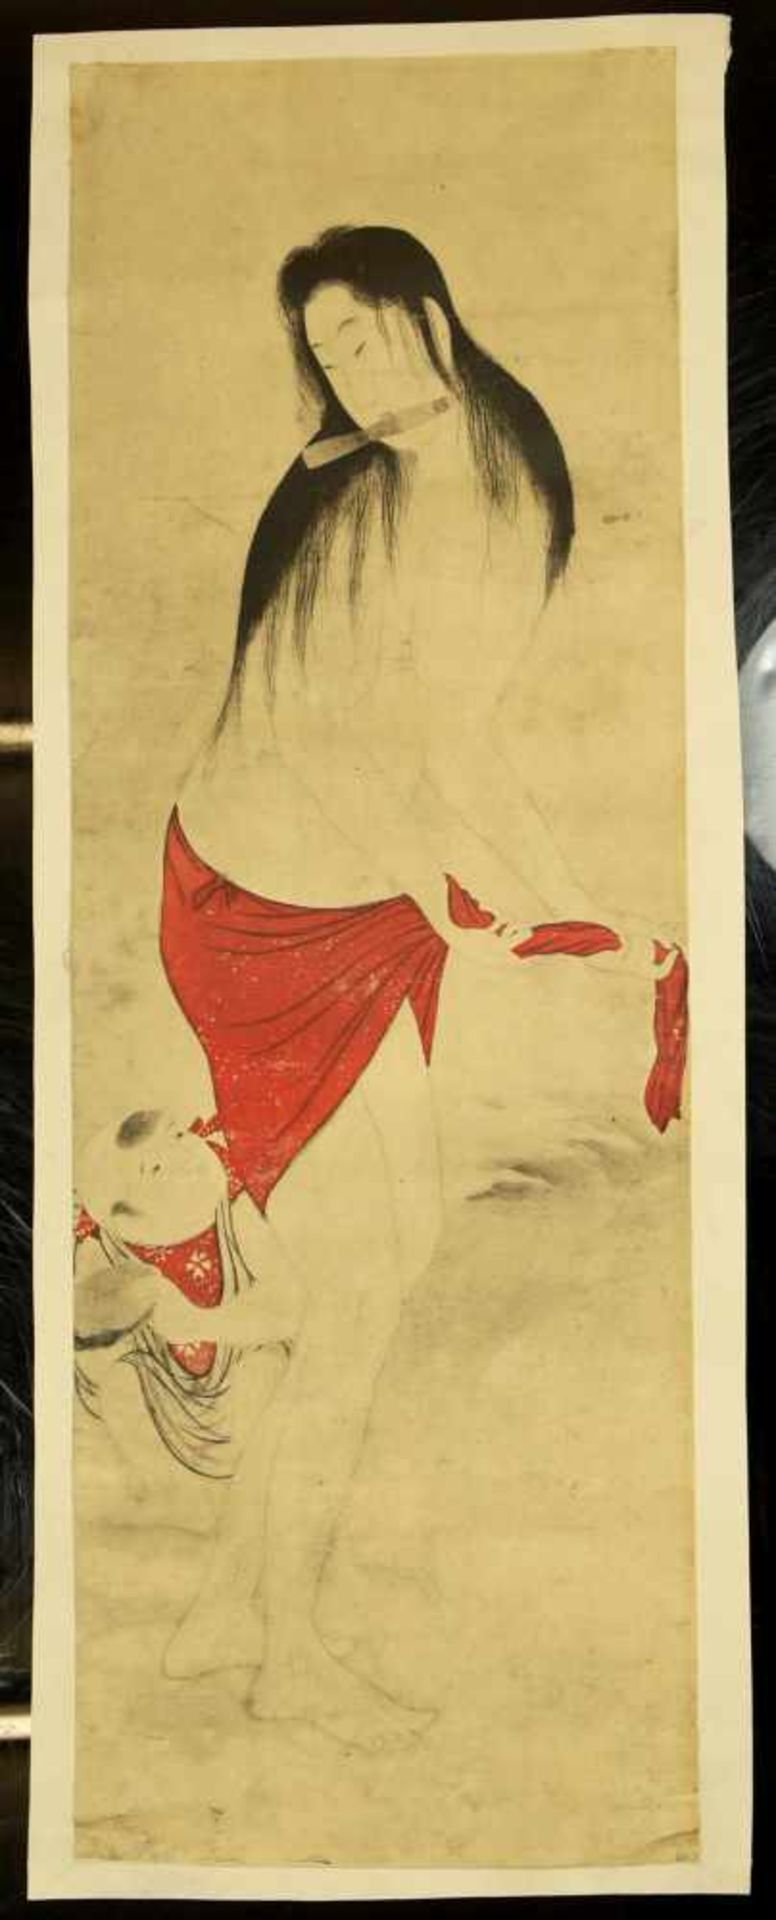 Utamaro, Kitagawa (1753-1806) - Farbholzschnitt Erotische SzeneGroßer Farbholzschnitt mit erotischem